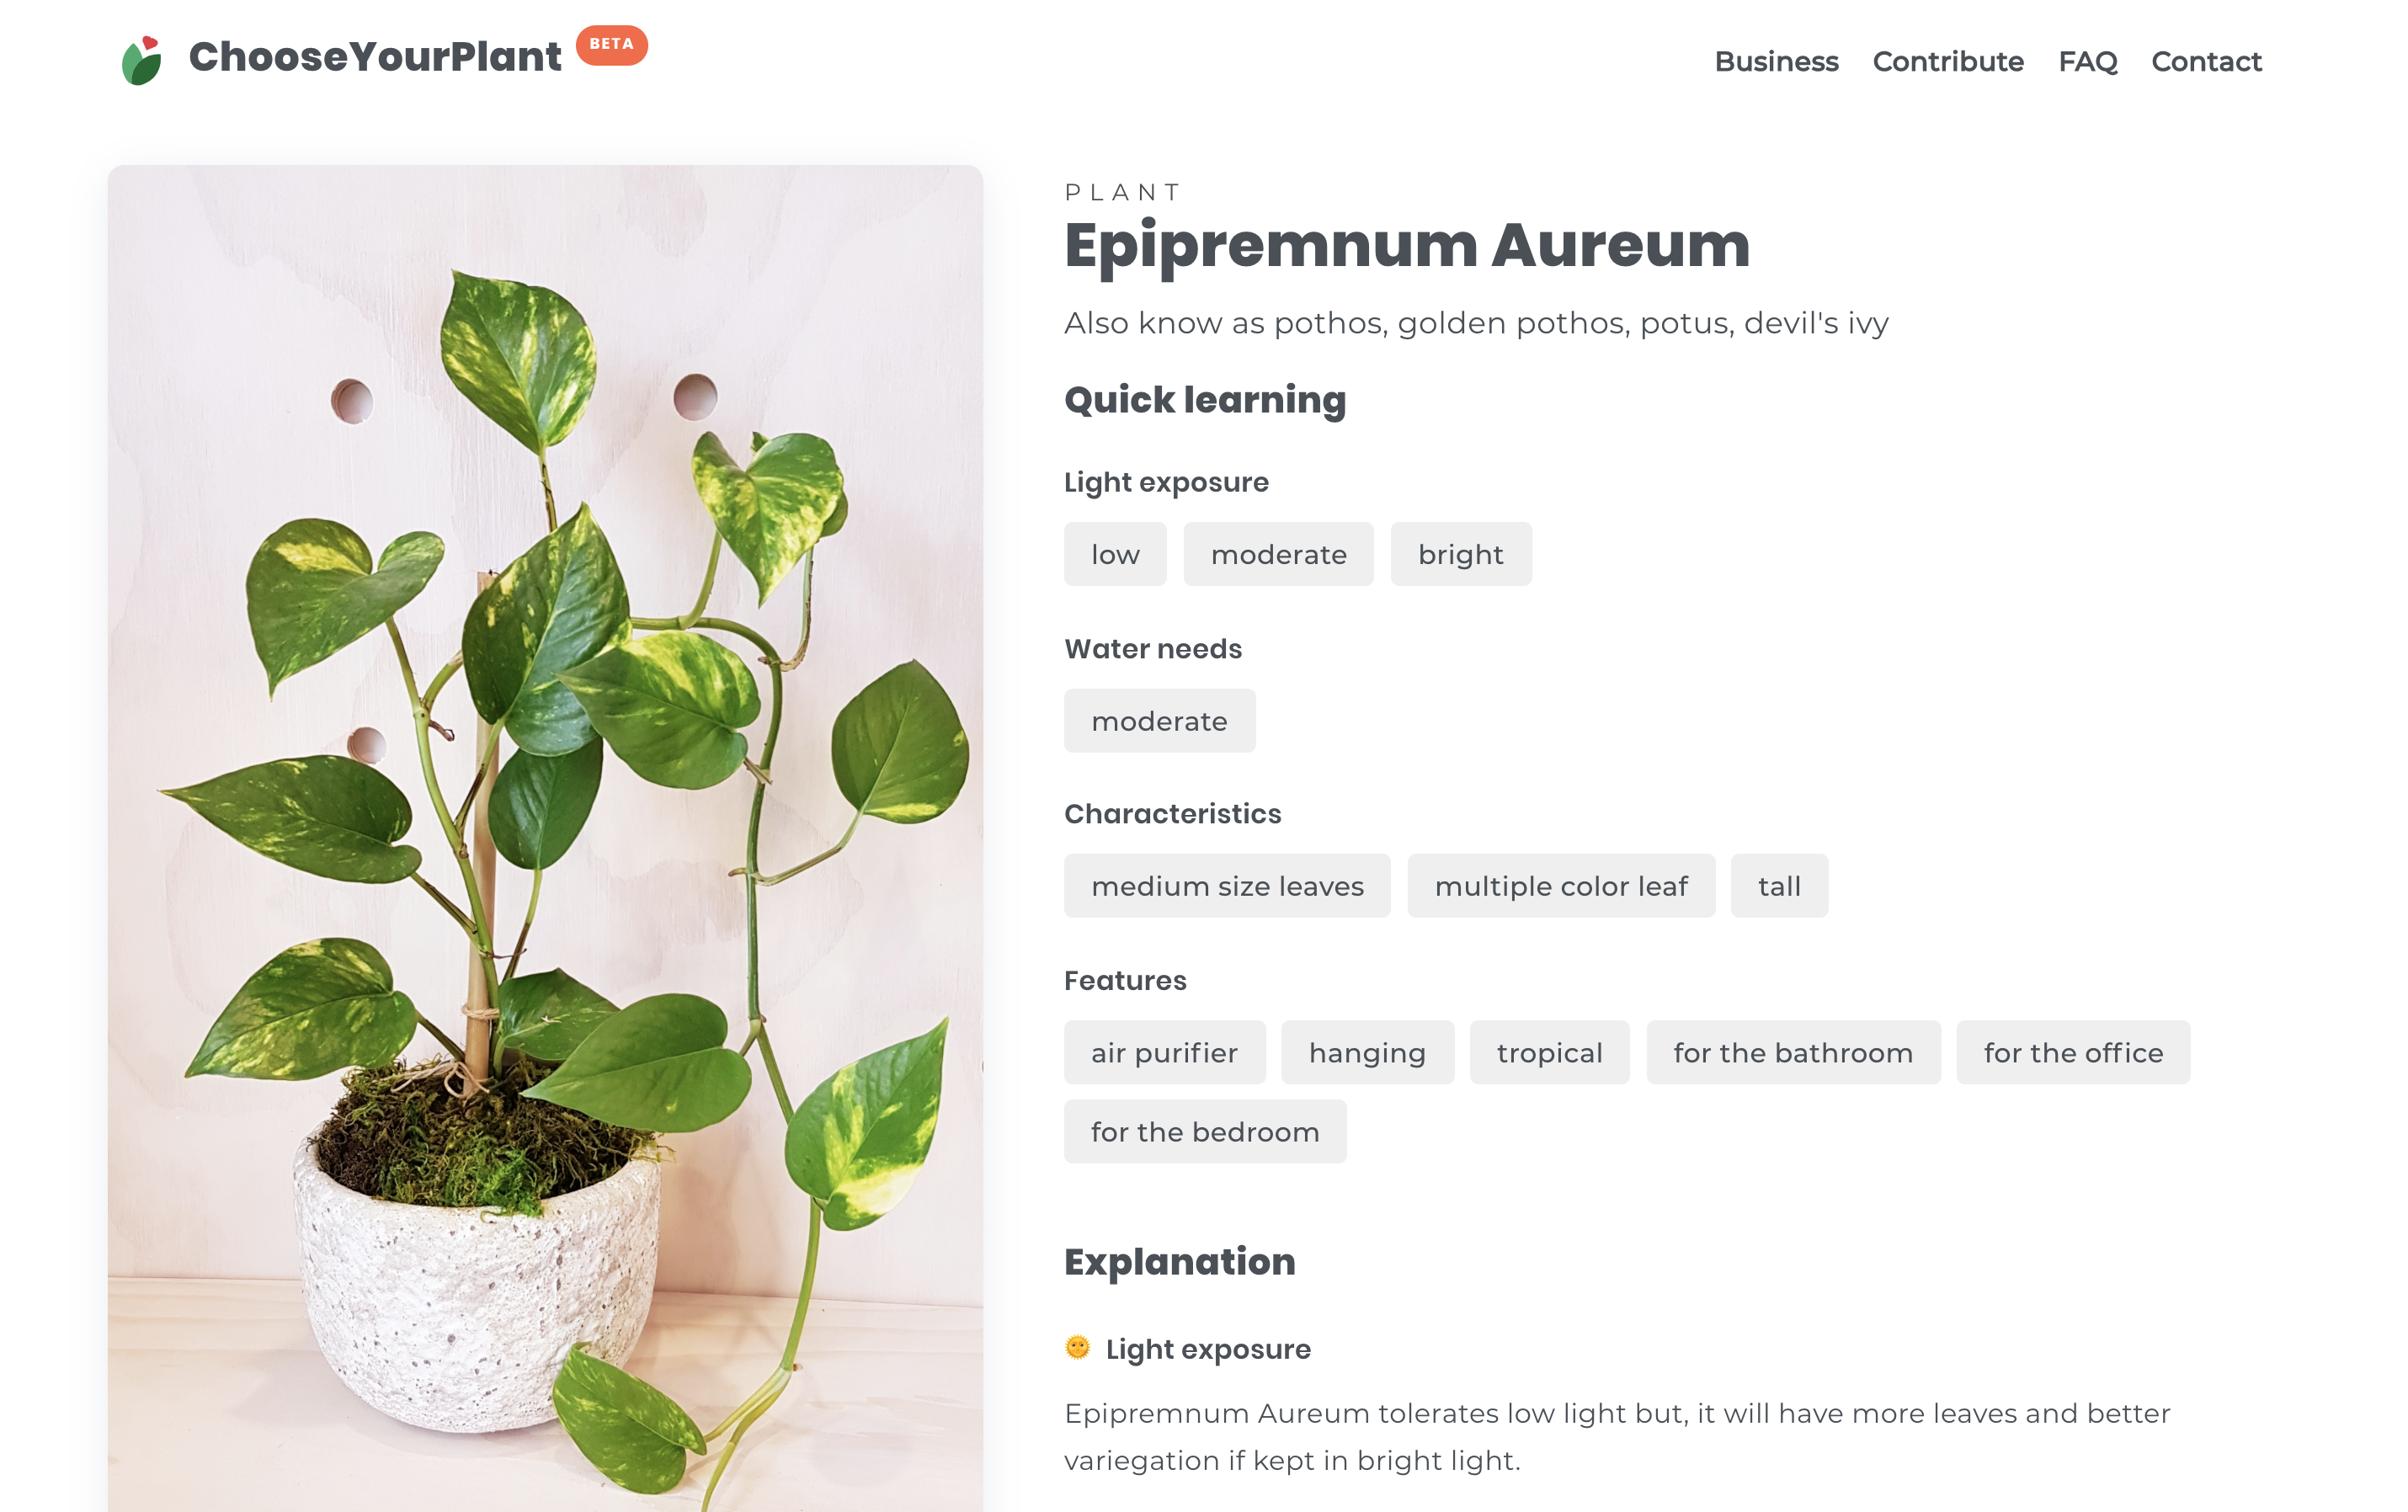 Aspecto visual de la búsqueda de una planta en la aplicación Chooseyourplant